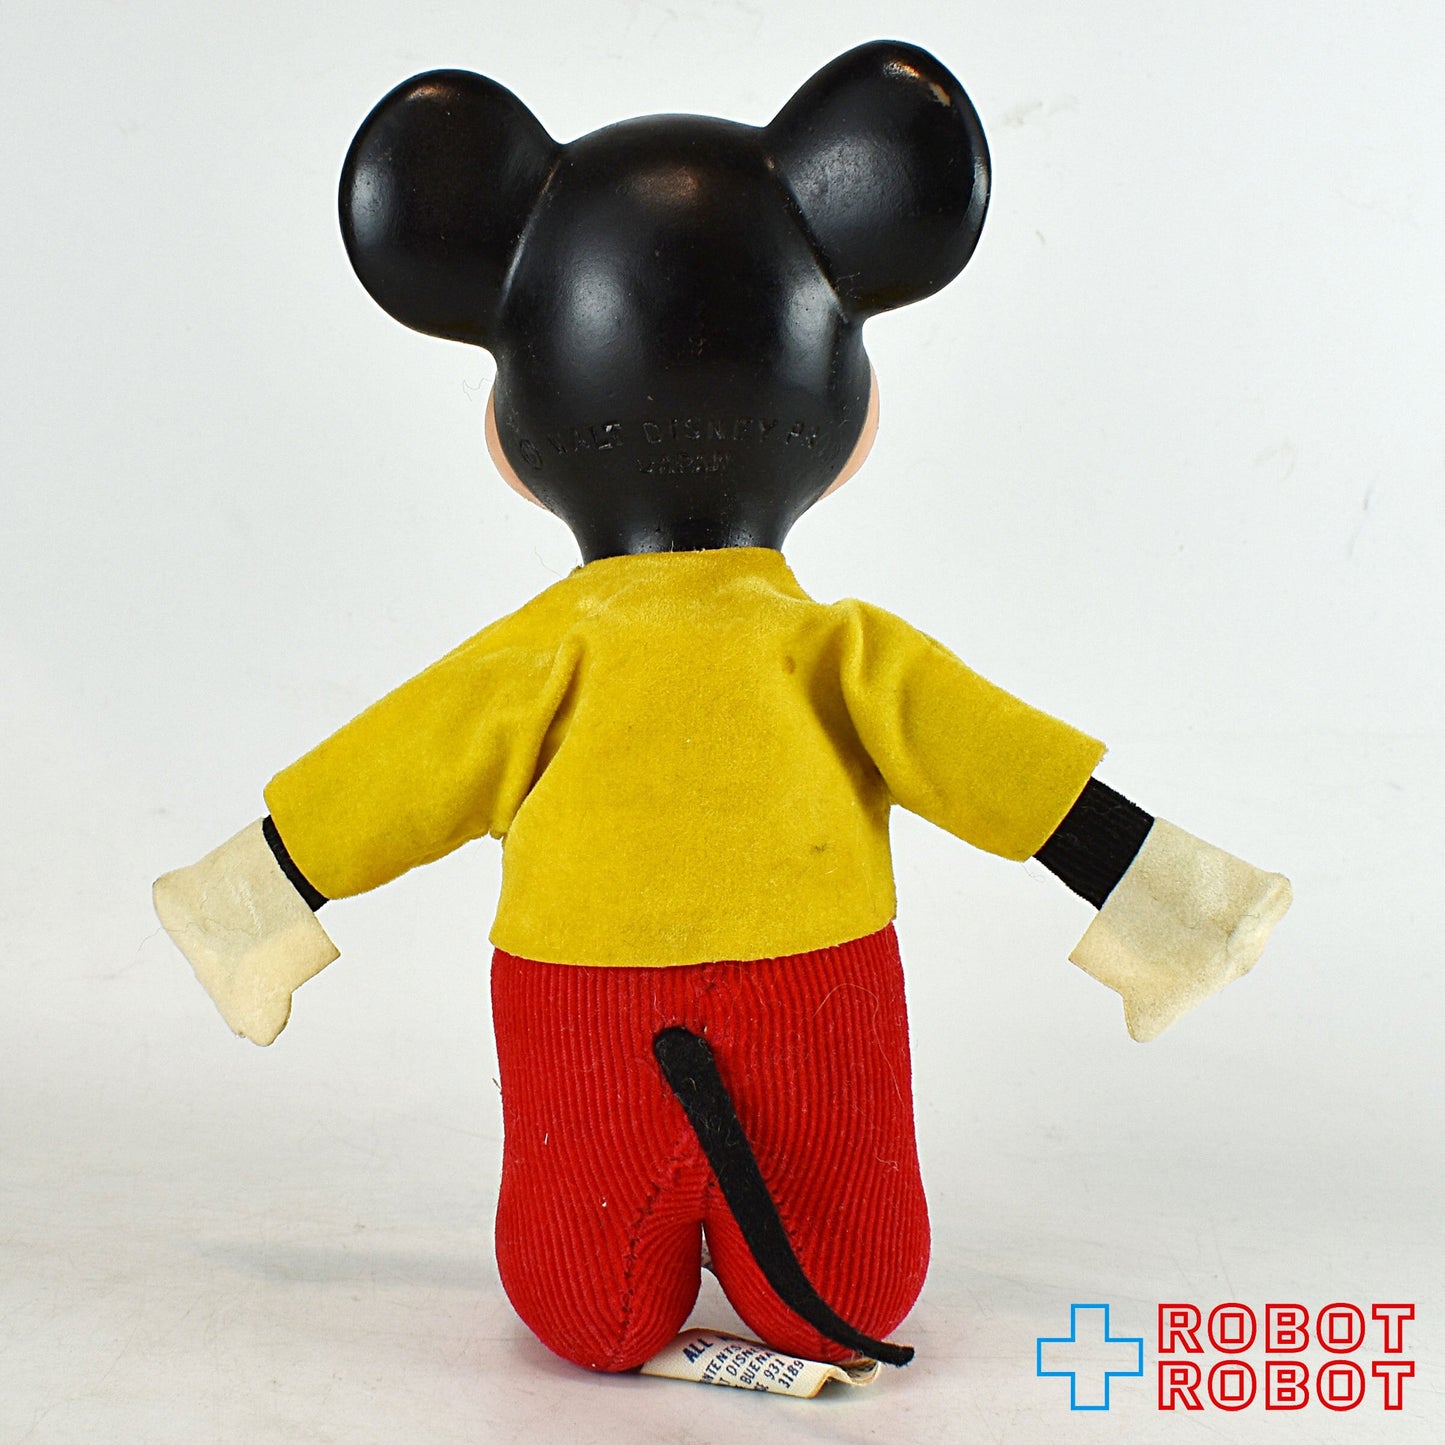 ウォルト・ディズニー ・ディストリビューティング ミッキーマウス おがくず人形 MADE IN JAPAN